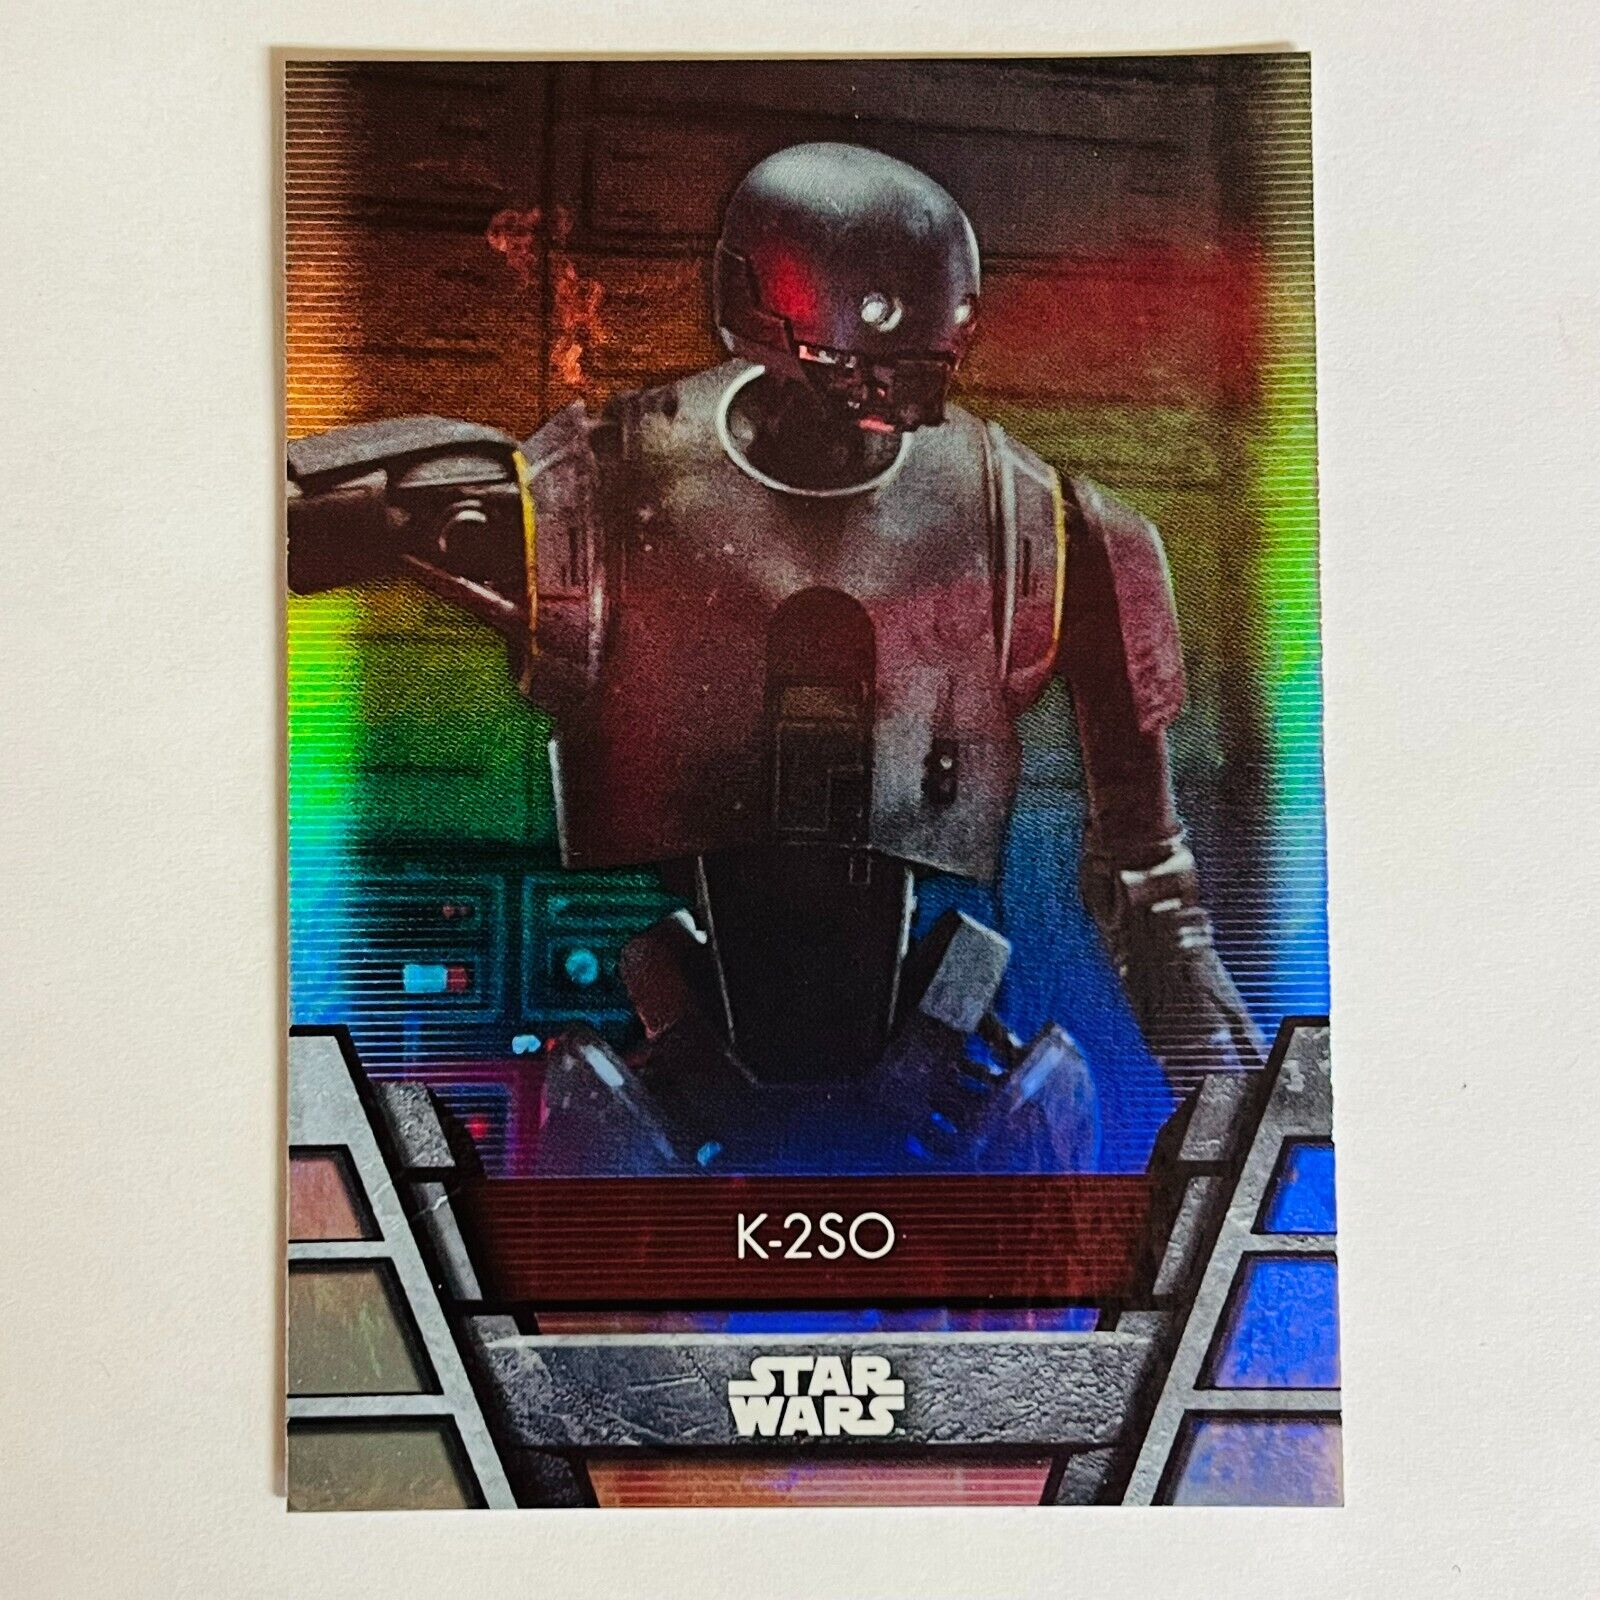 2020 Topps Star Wars Holocron Foil Base Card Reb-25 K-2SO